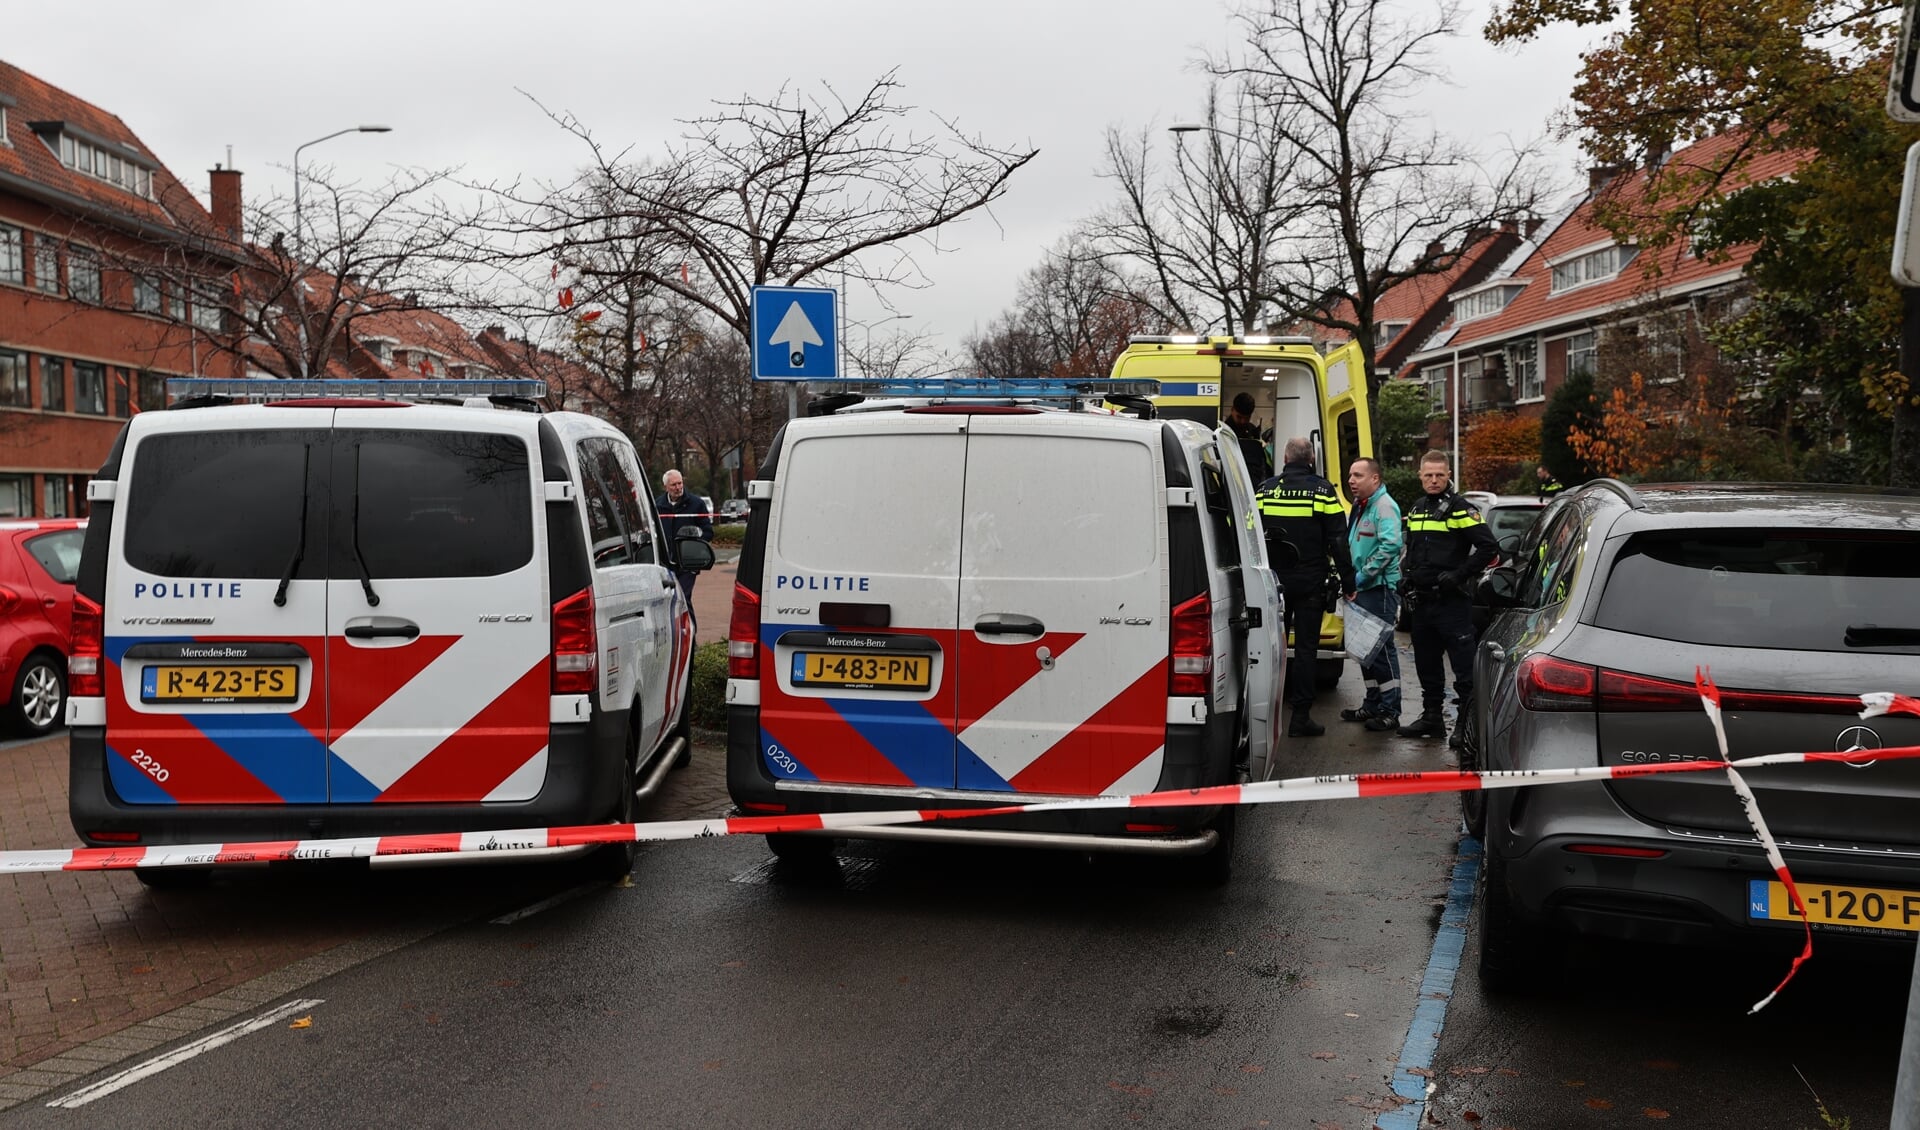 Politie en ambulance druk doende op het afgezette plaats delict (foto: Donny Kooistra Regio15).